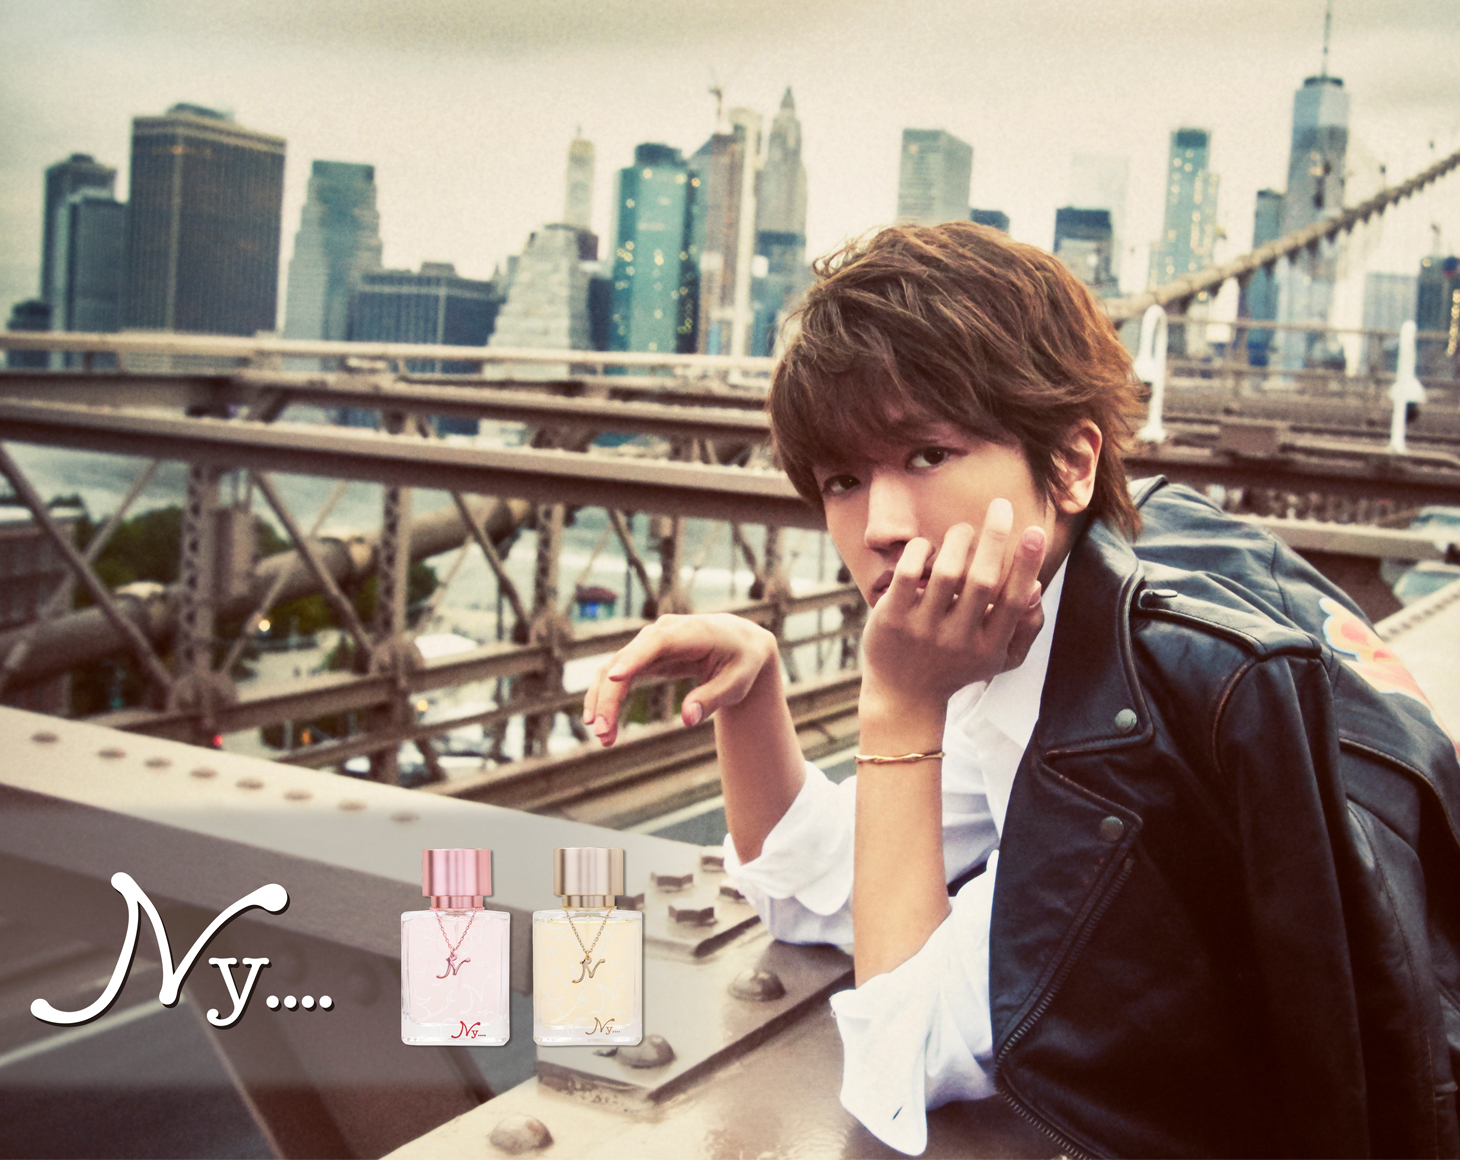 Nissy(西島隆弘)プロデュース香水ブランド「Ny….」ポップアップストア 